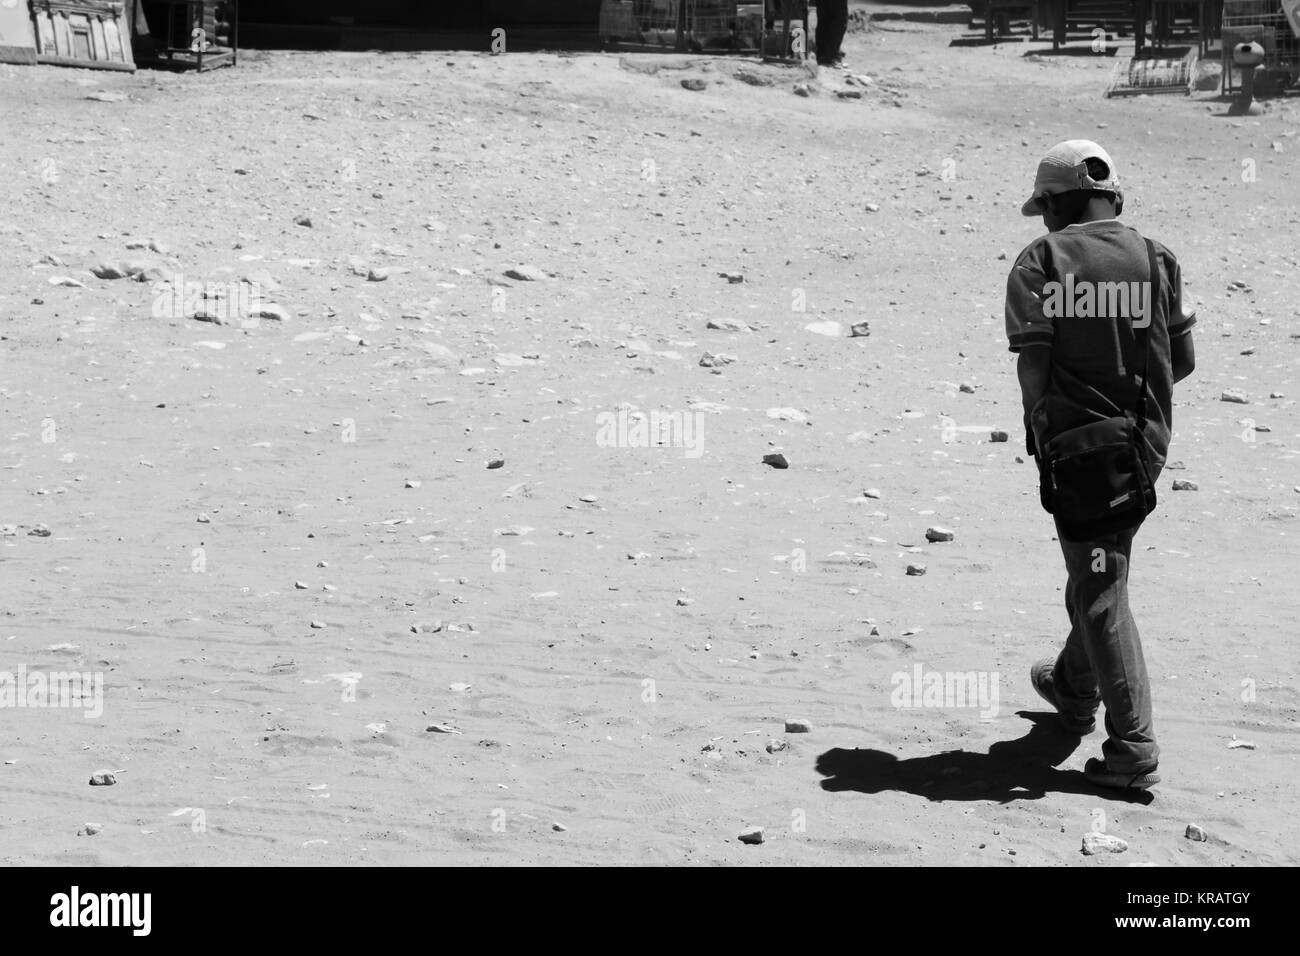 Triste bambino in Petra - 20/05/2017 - Giordania / Amman - Sguardi Aridi da Ali Raffaele Mataró girato nel maggio 2017 - disperato destino dei bambini del deserto Foto Stock